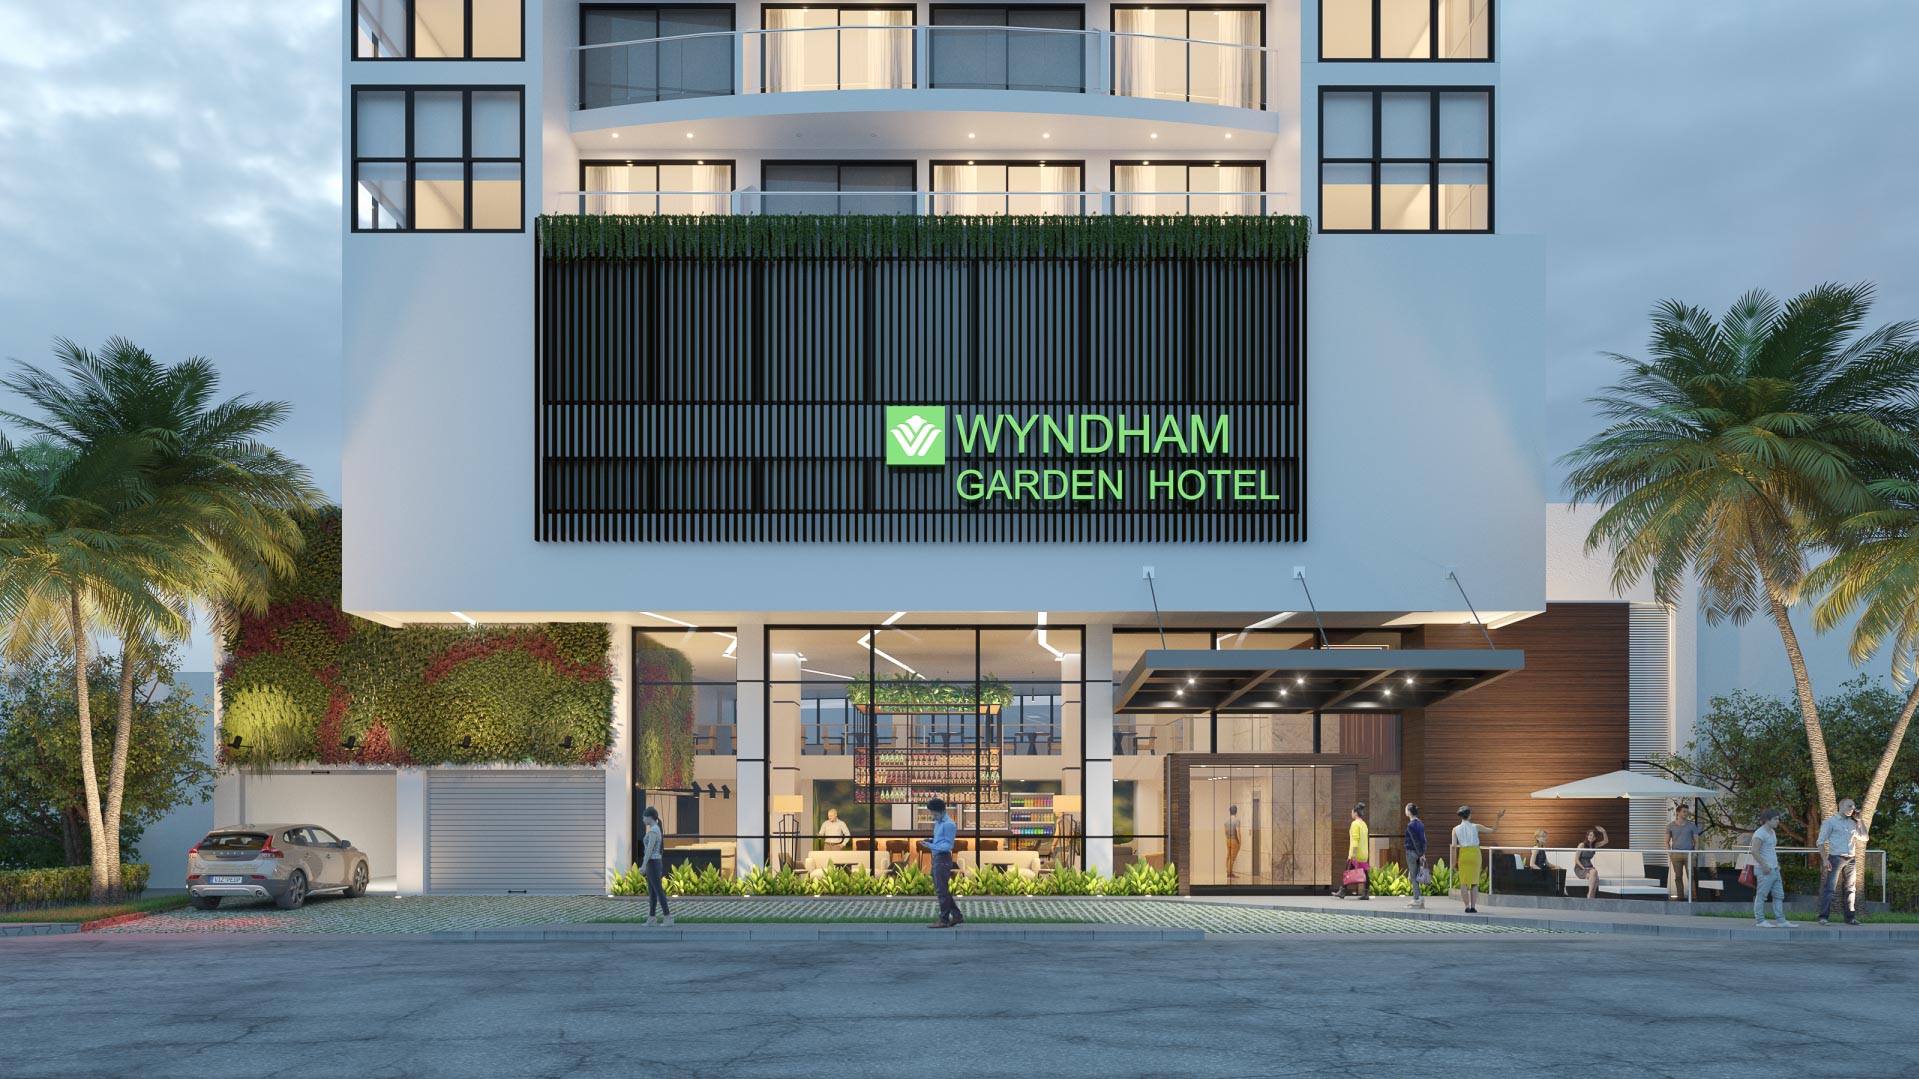 Wyndham Garden Cartagena - Visualización 3D